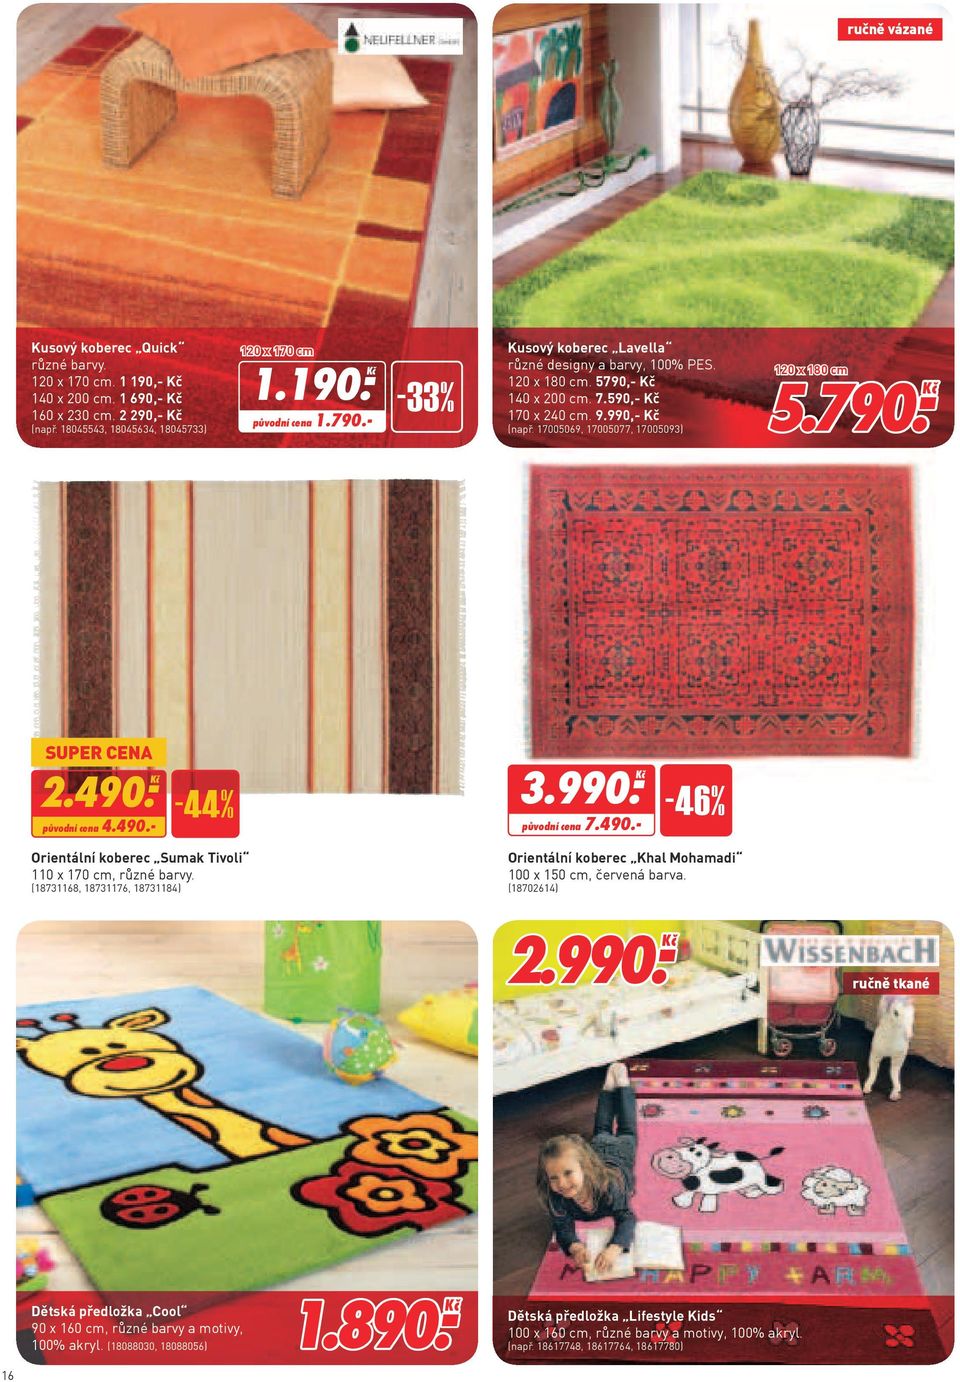 490. Ḵč půvní cena 4.490.- -44% 3.990. Ḵč půvní cena 7.490.- -46% Orientální koberec Sumak Tivoli 110 x 170 cm, různé barvy.